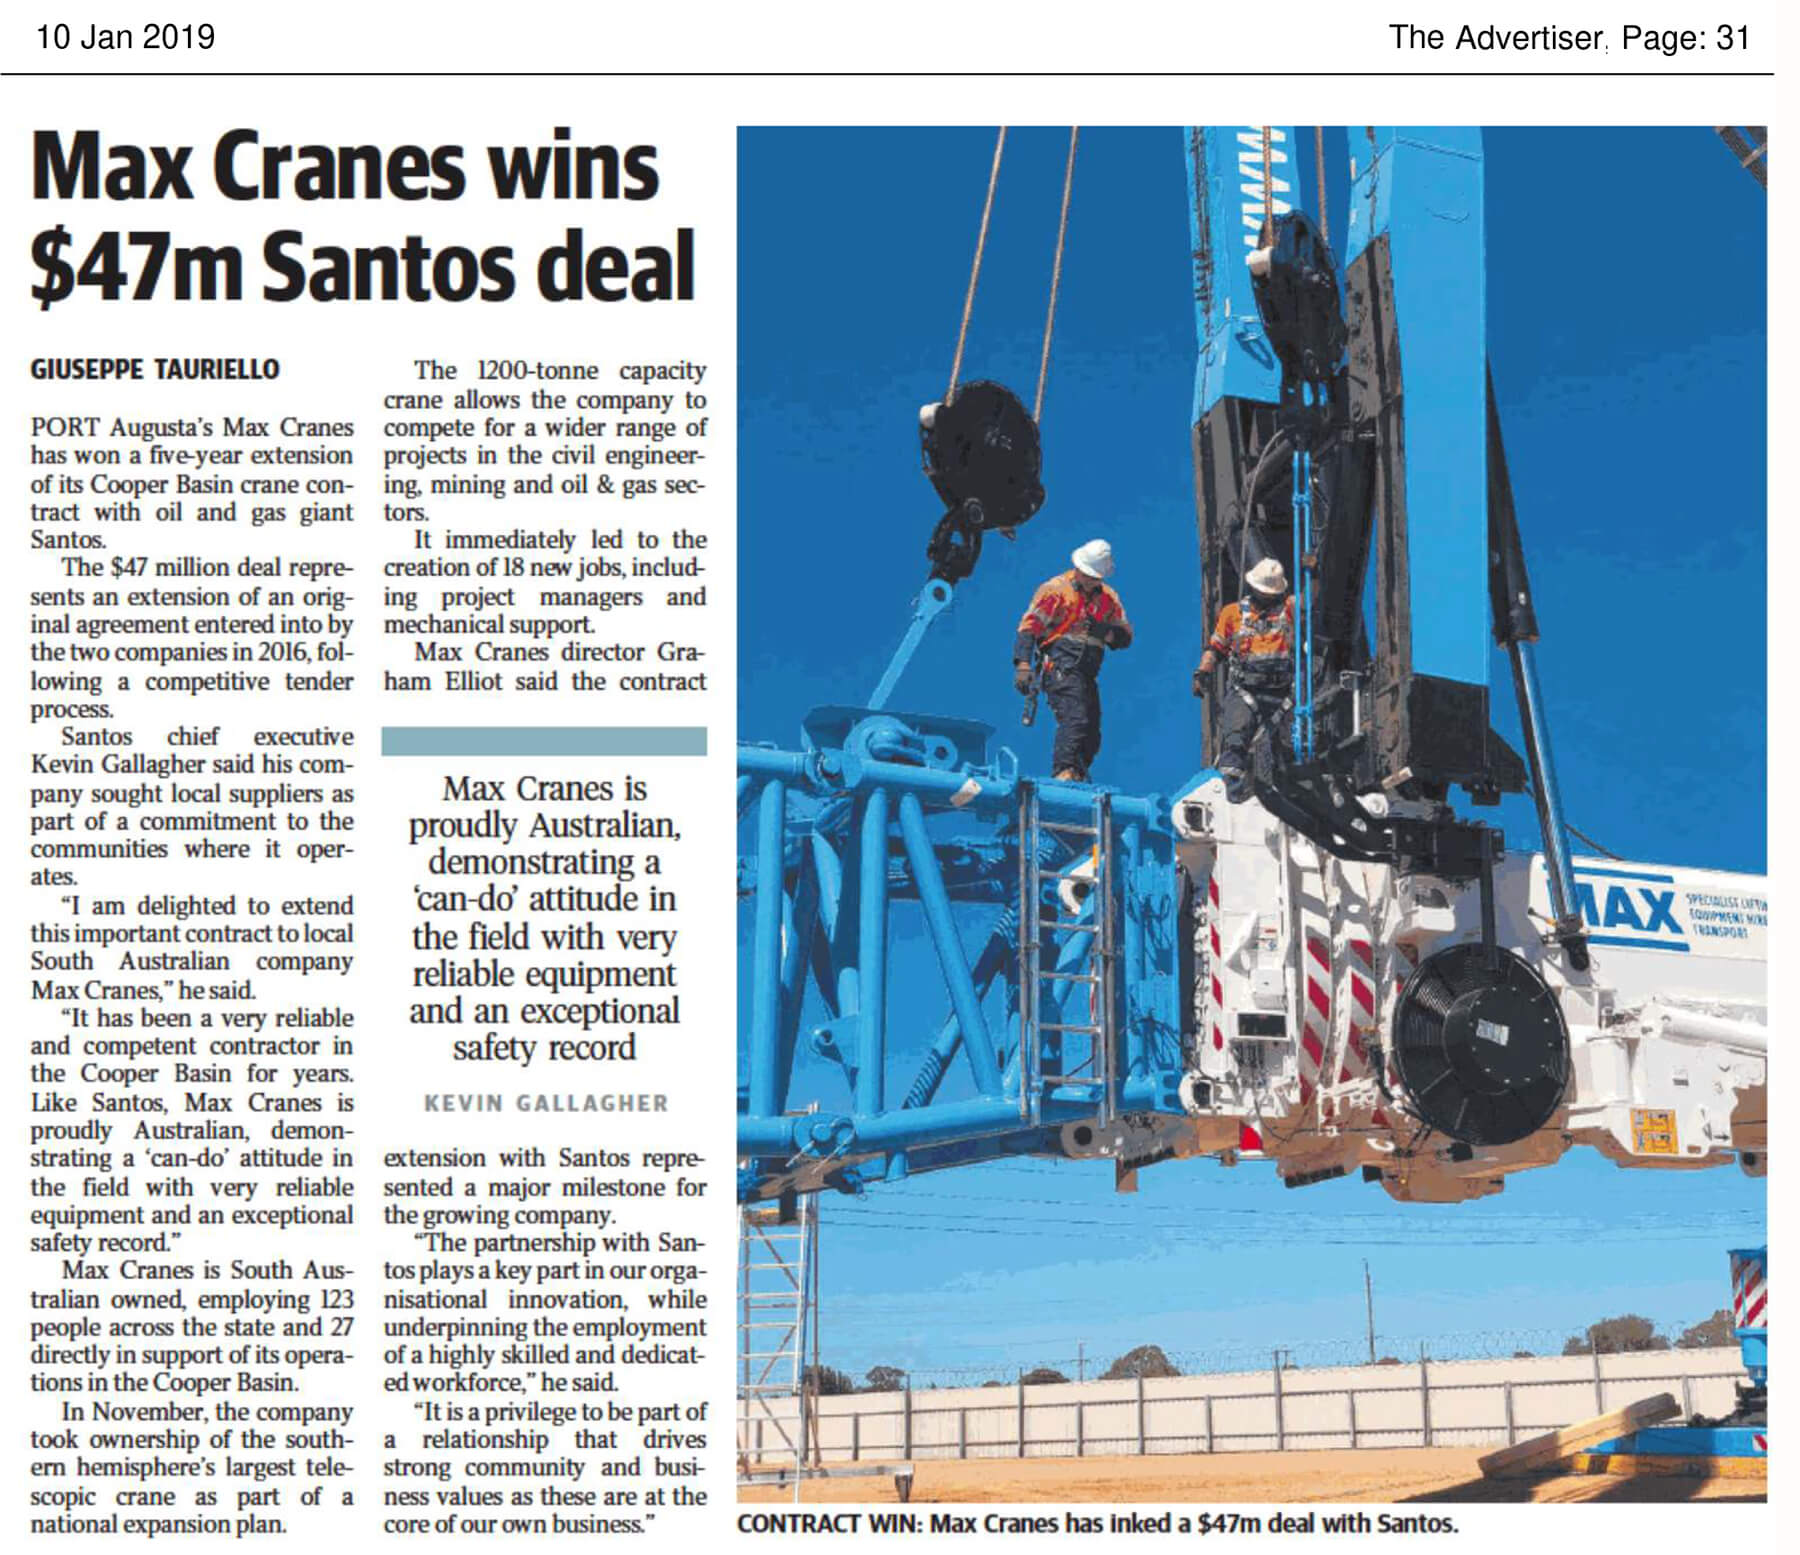 MAX Services wins $47m Santos Deal